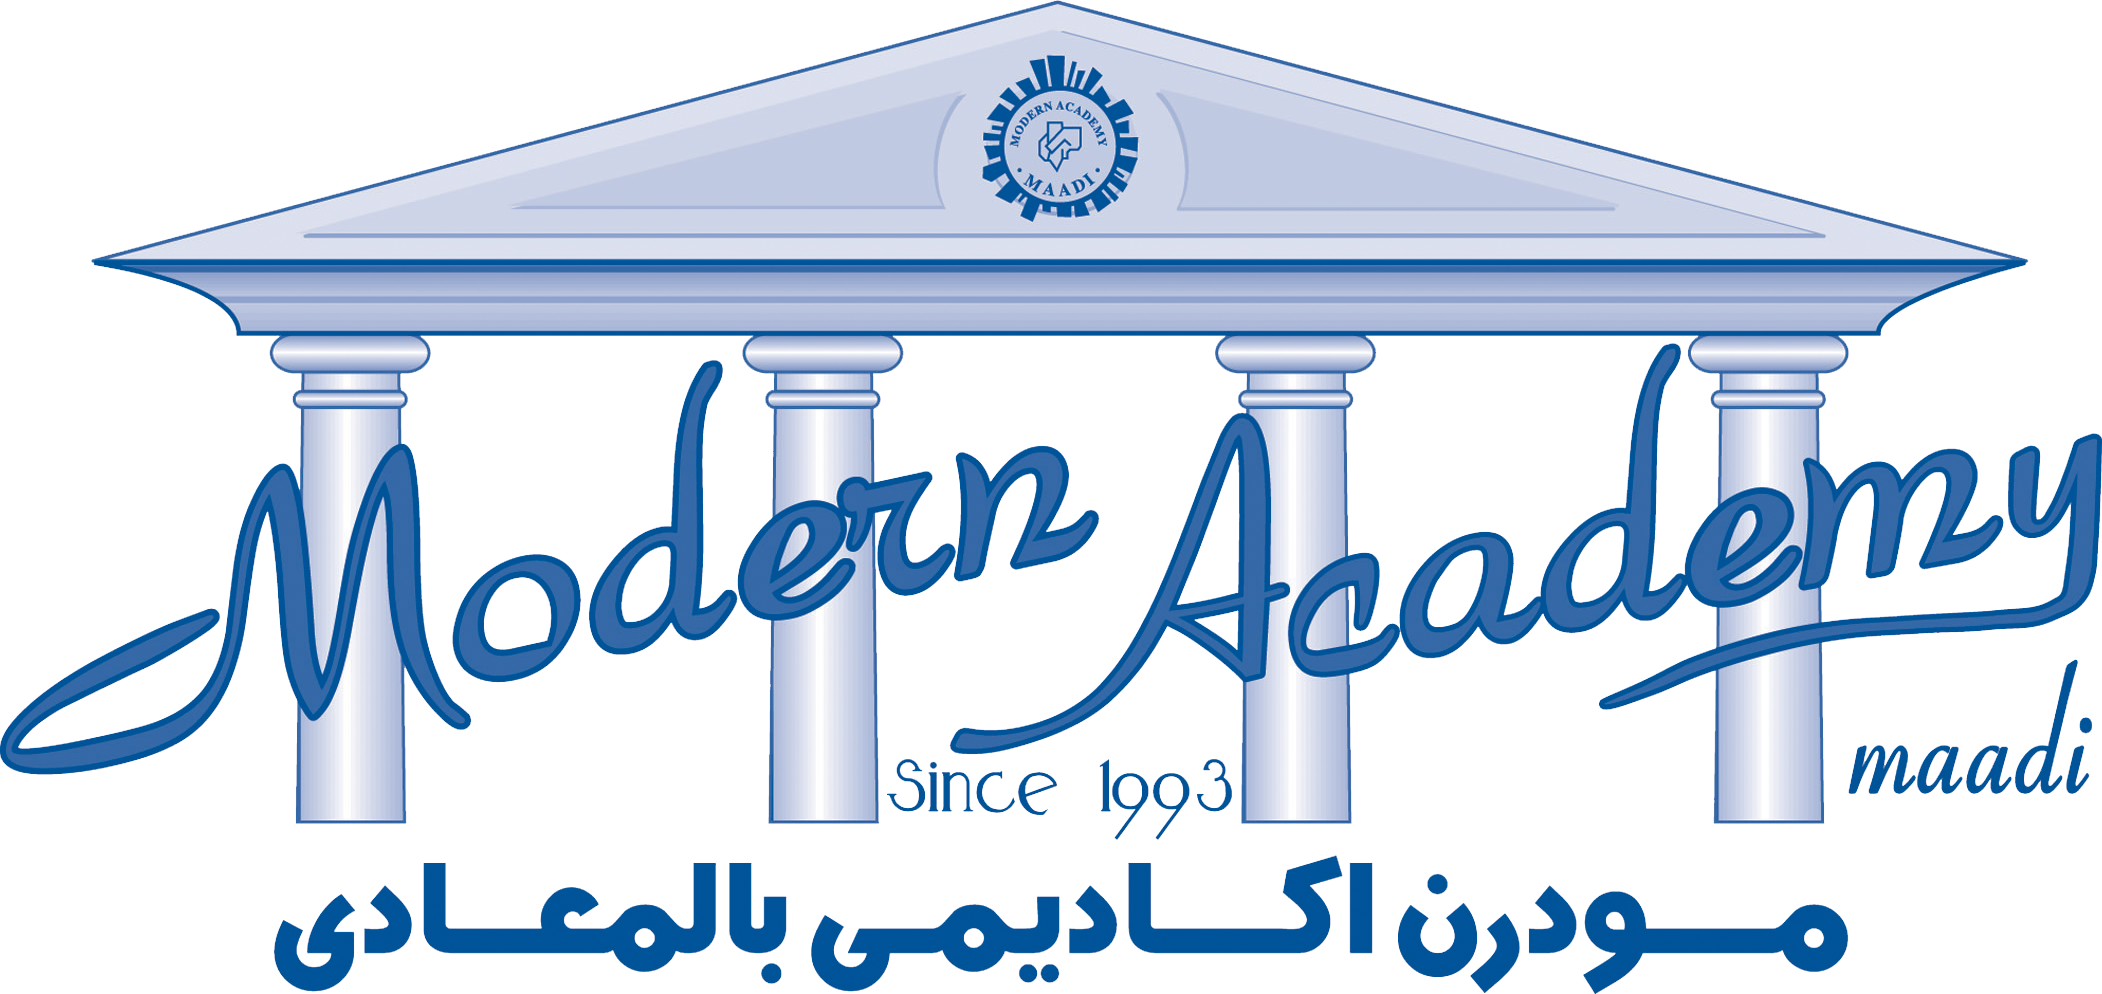 دولة مصر: روابط الأكاديمية الحديثة للهندسة والتكنولوجيا